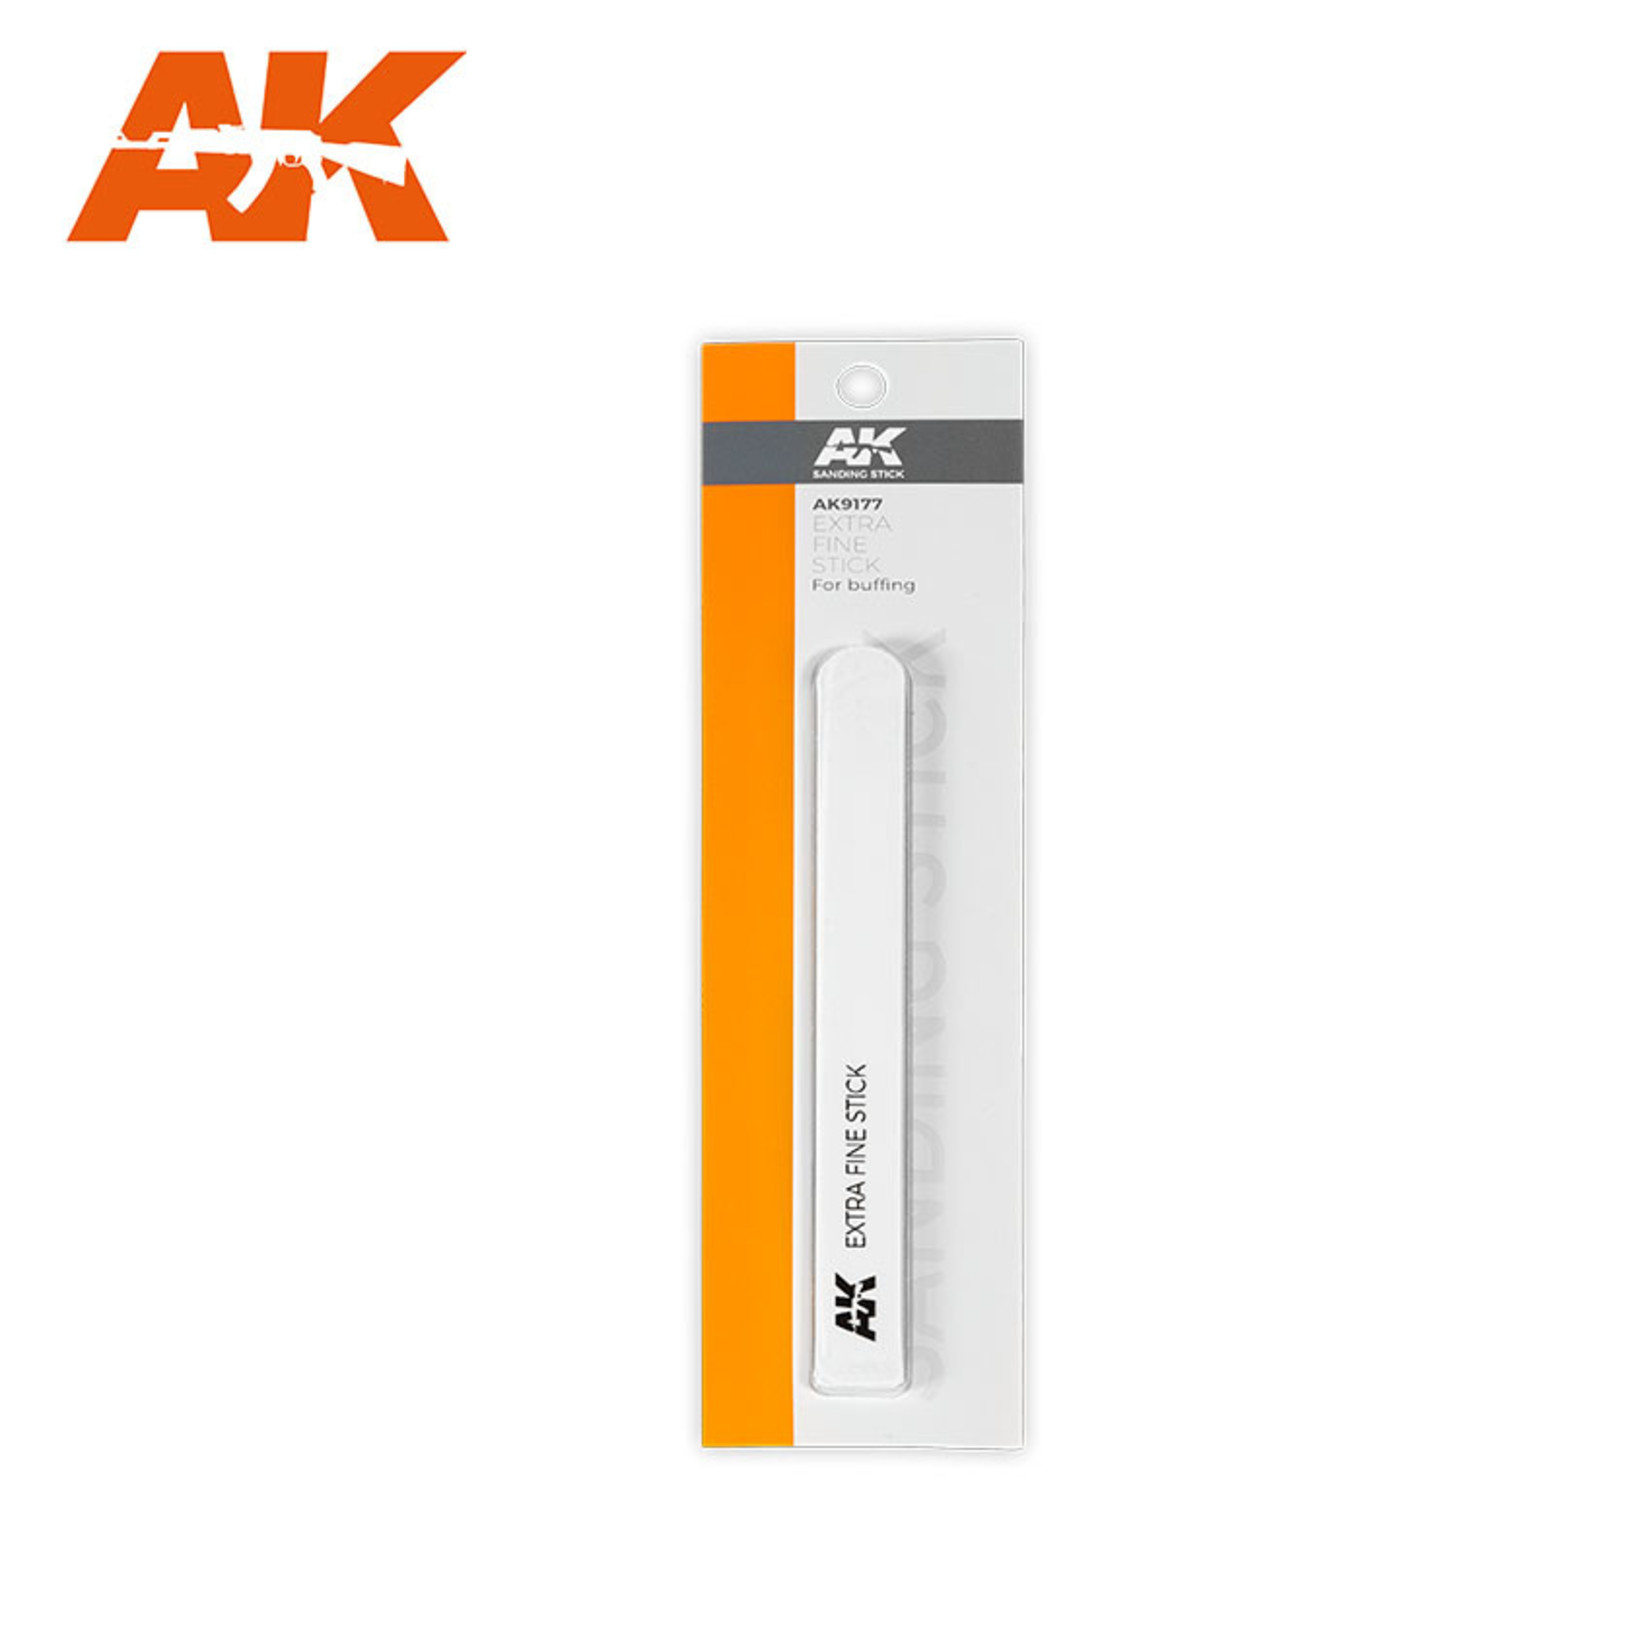 AK Interactive AK9177 Extra Fine Sanding Stick